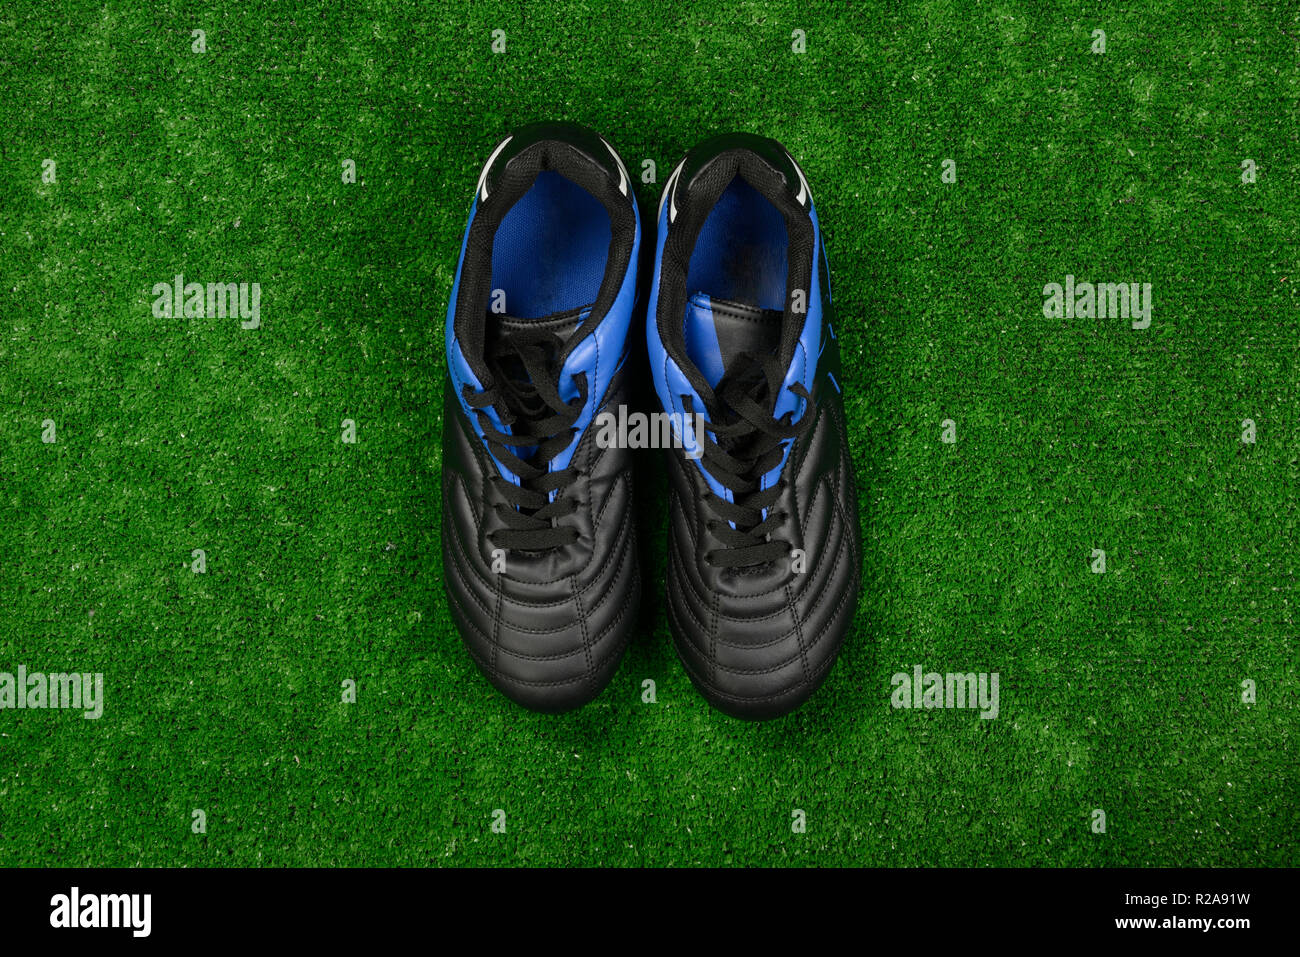 football boots artificial grass